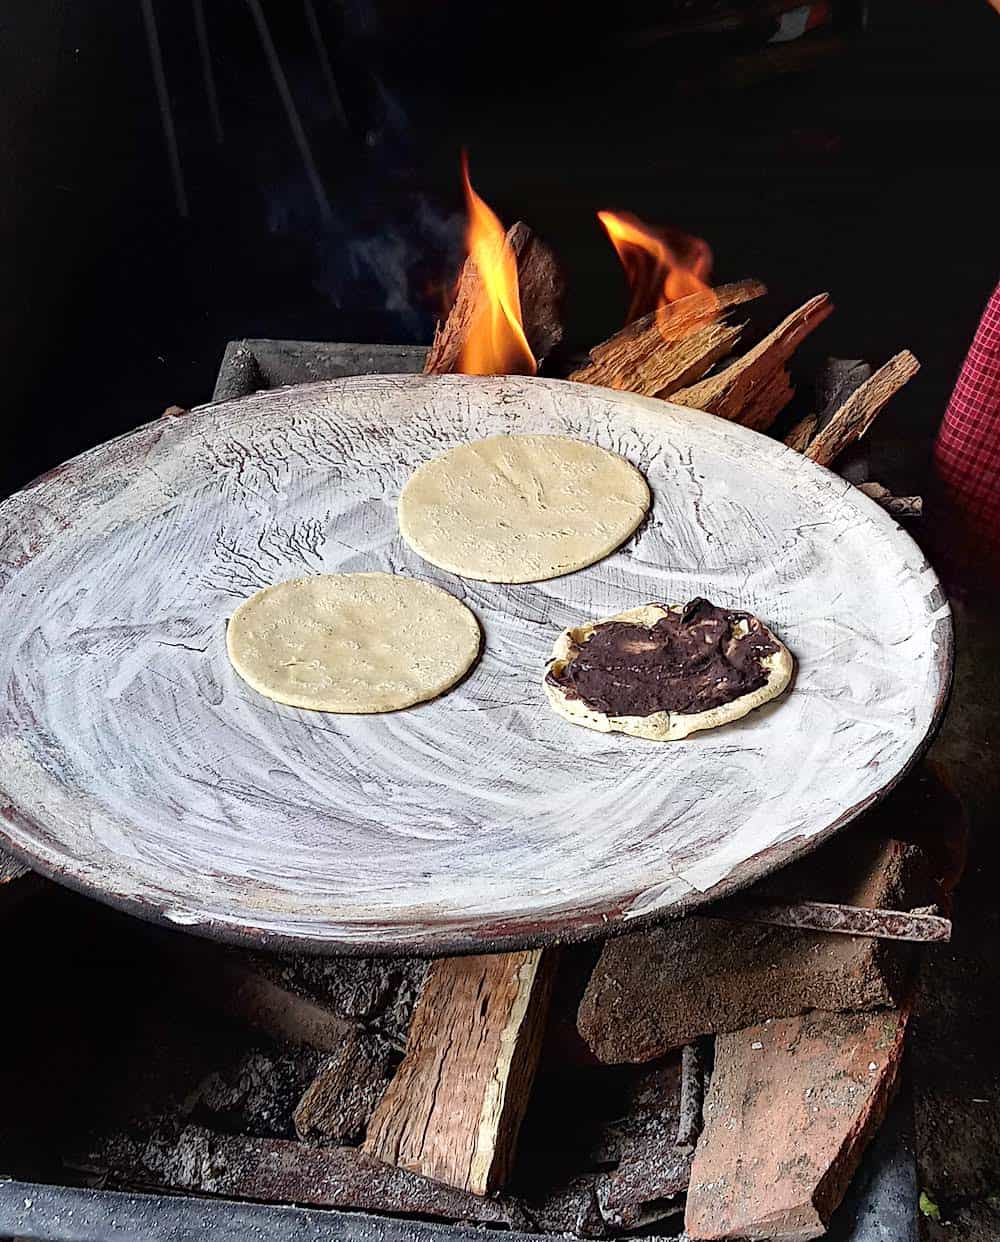 Preparing memelas in Oaxaca over a fire.